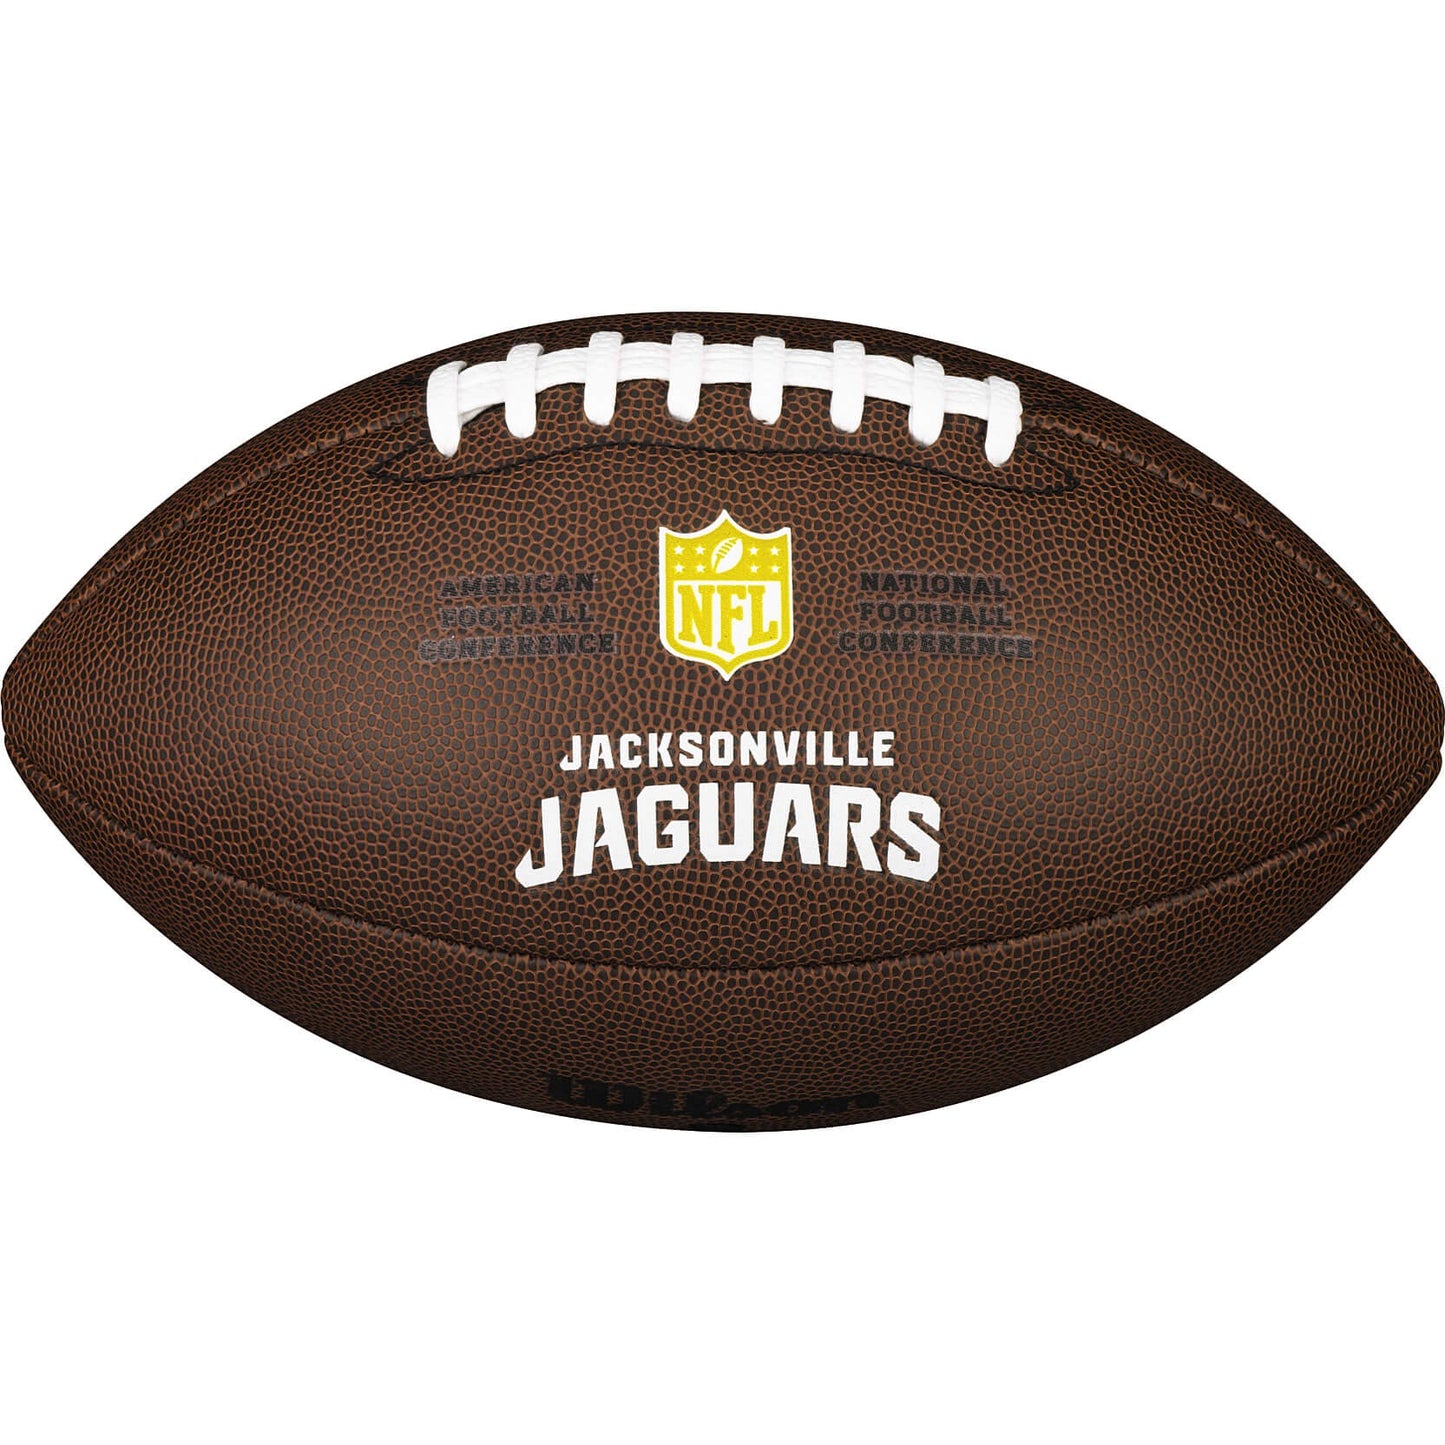 WILSON NFL LICENSED BALL Jacksonville Jaguars